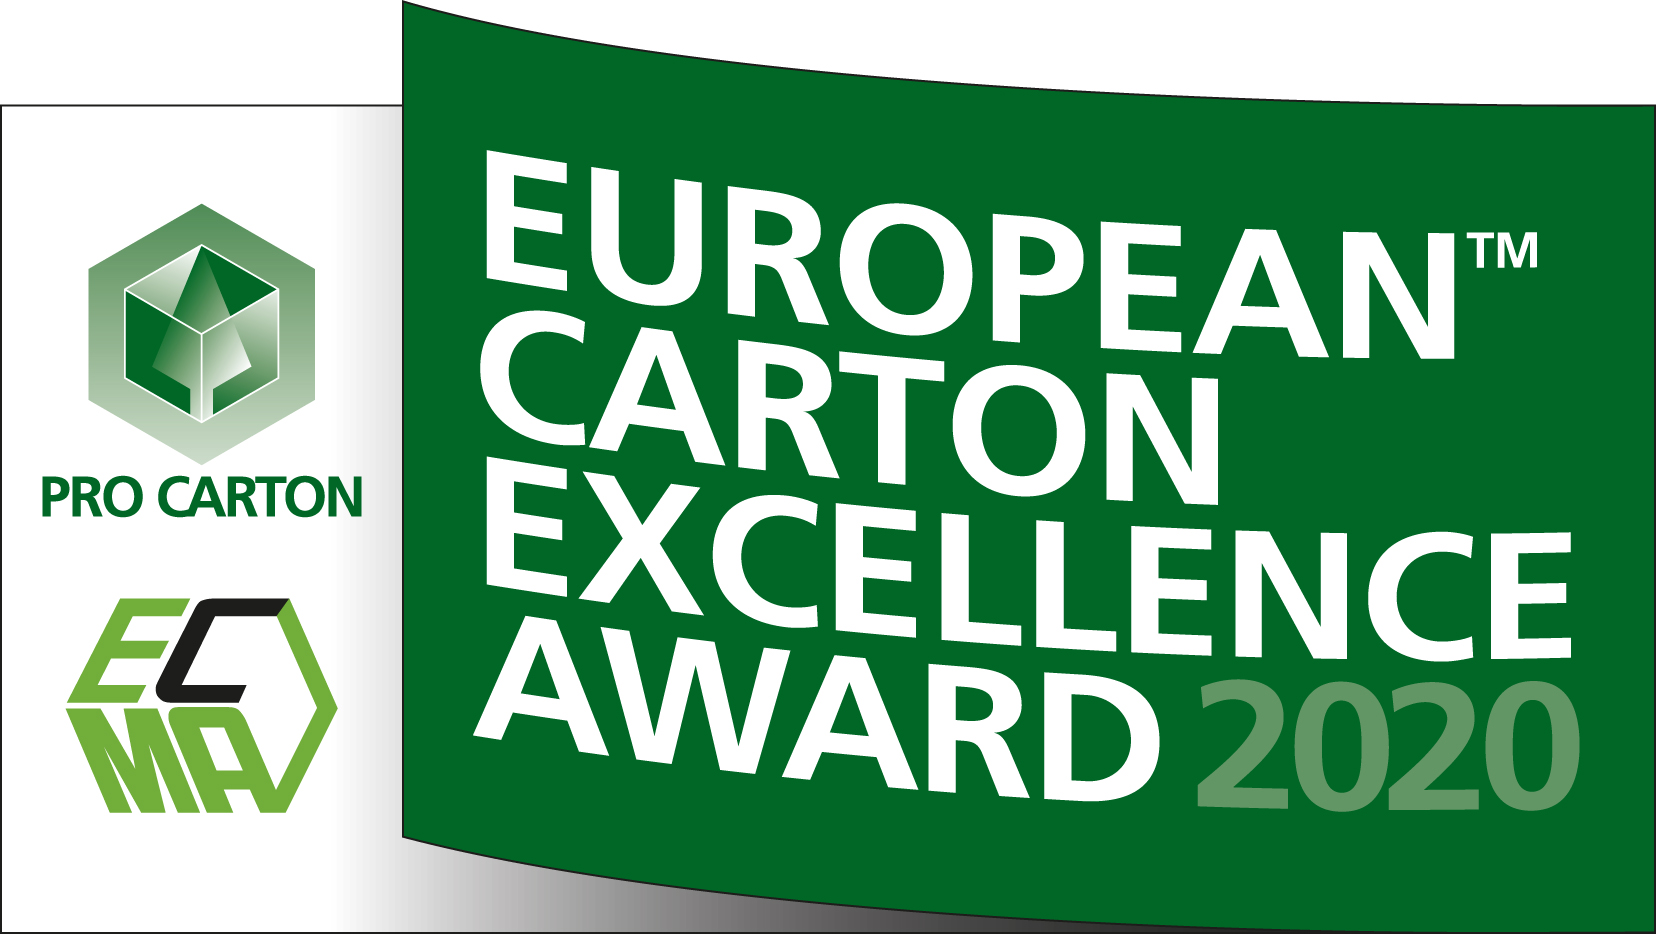 European Carton Excellence Award 2020